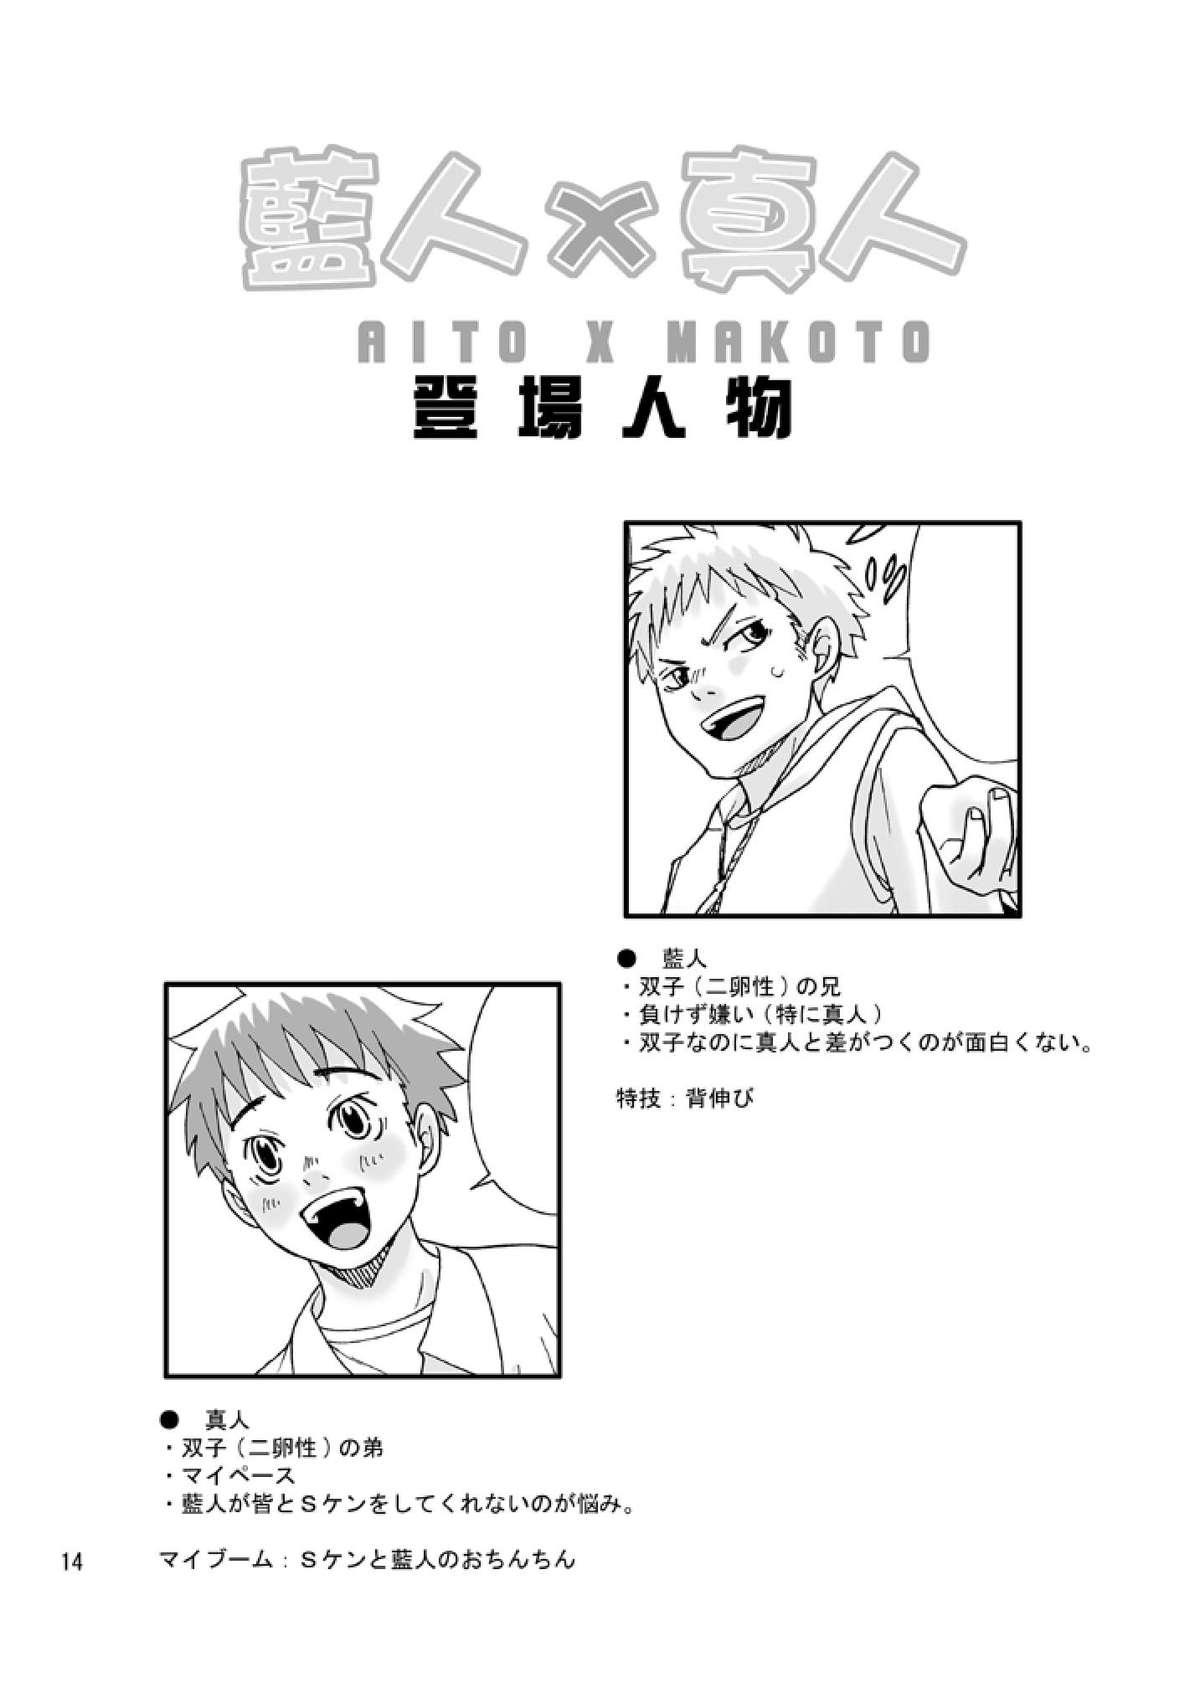 Aito x Makoto 12